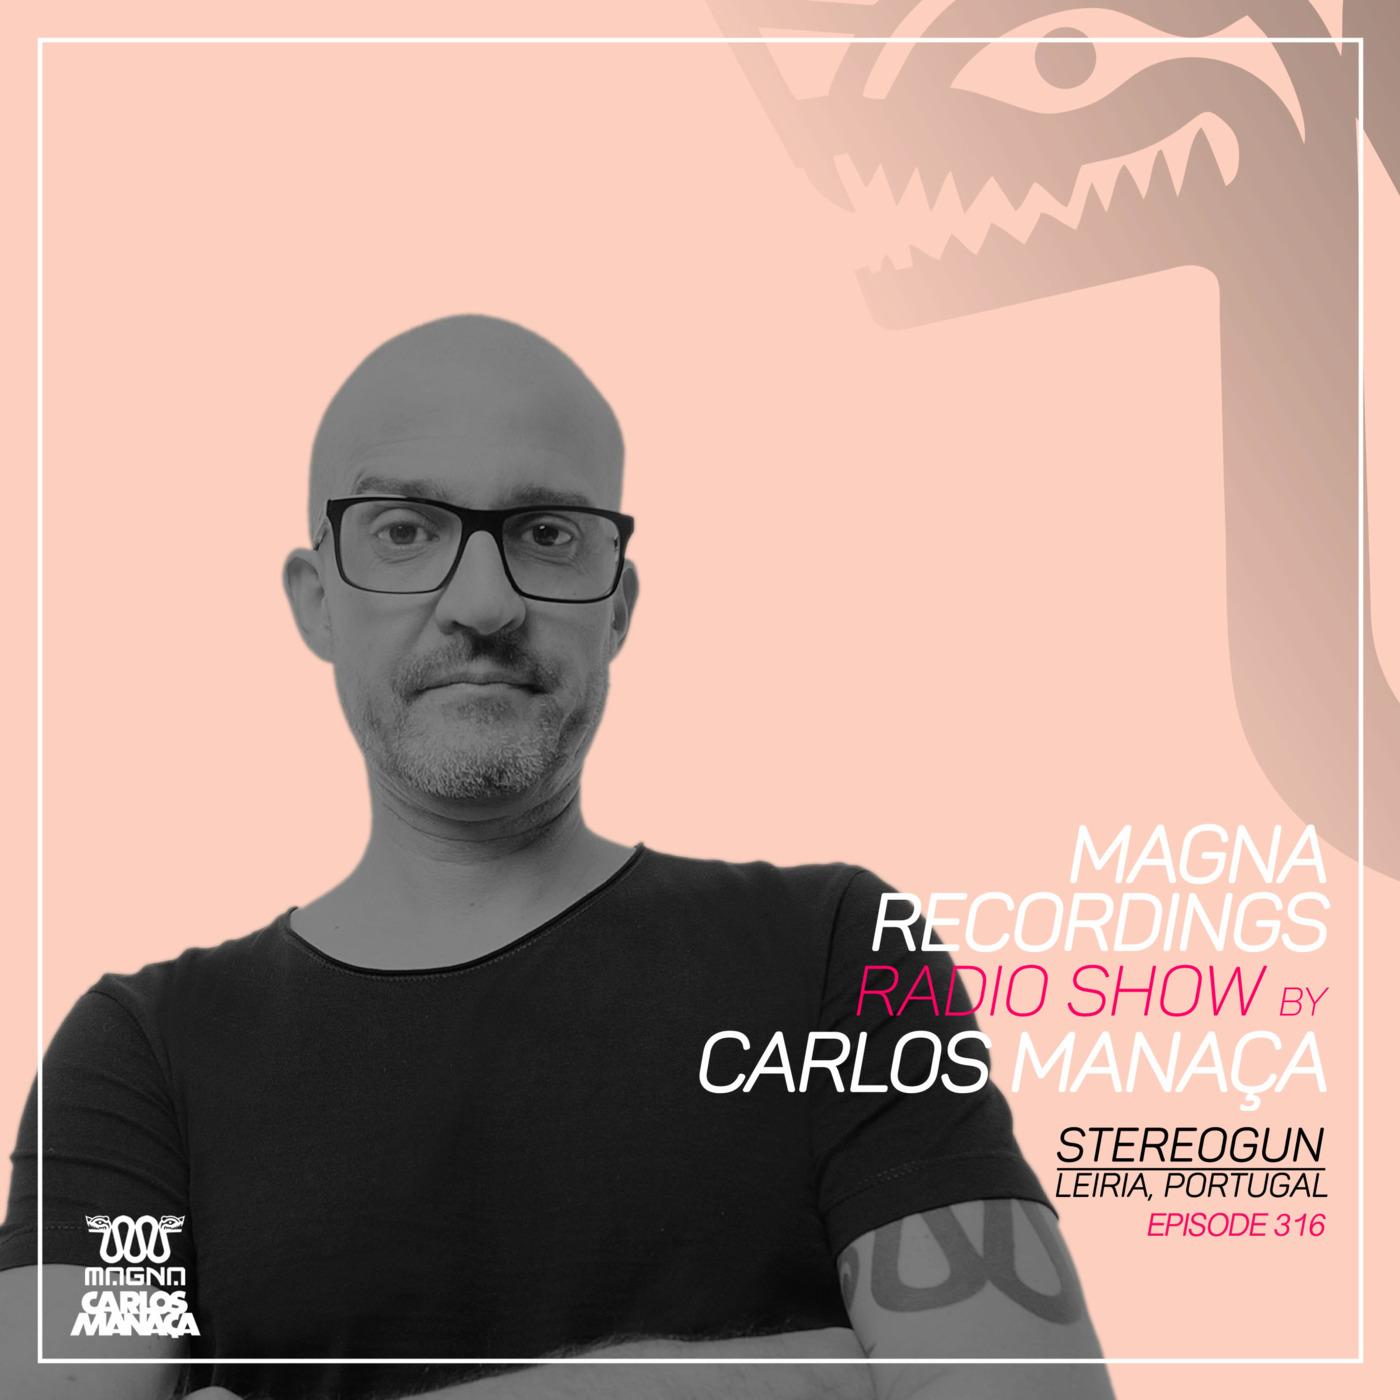 Episode 139: Magna Recordings Radio Show by Carlos Manaca 316 | Stereogun [Leiria]